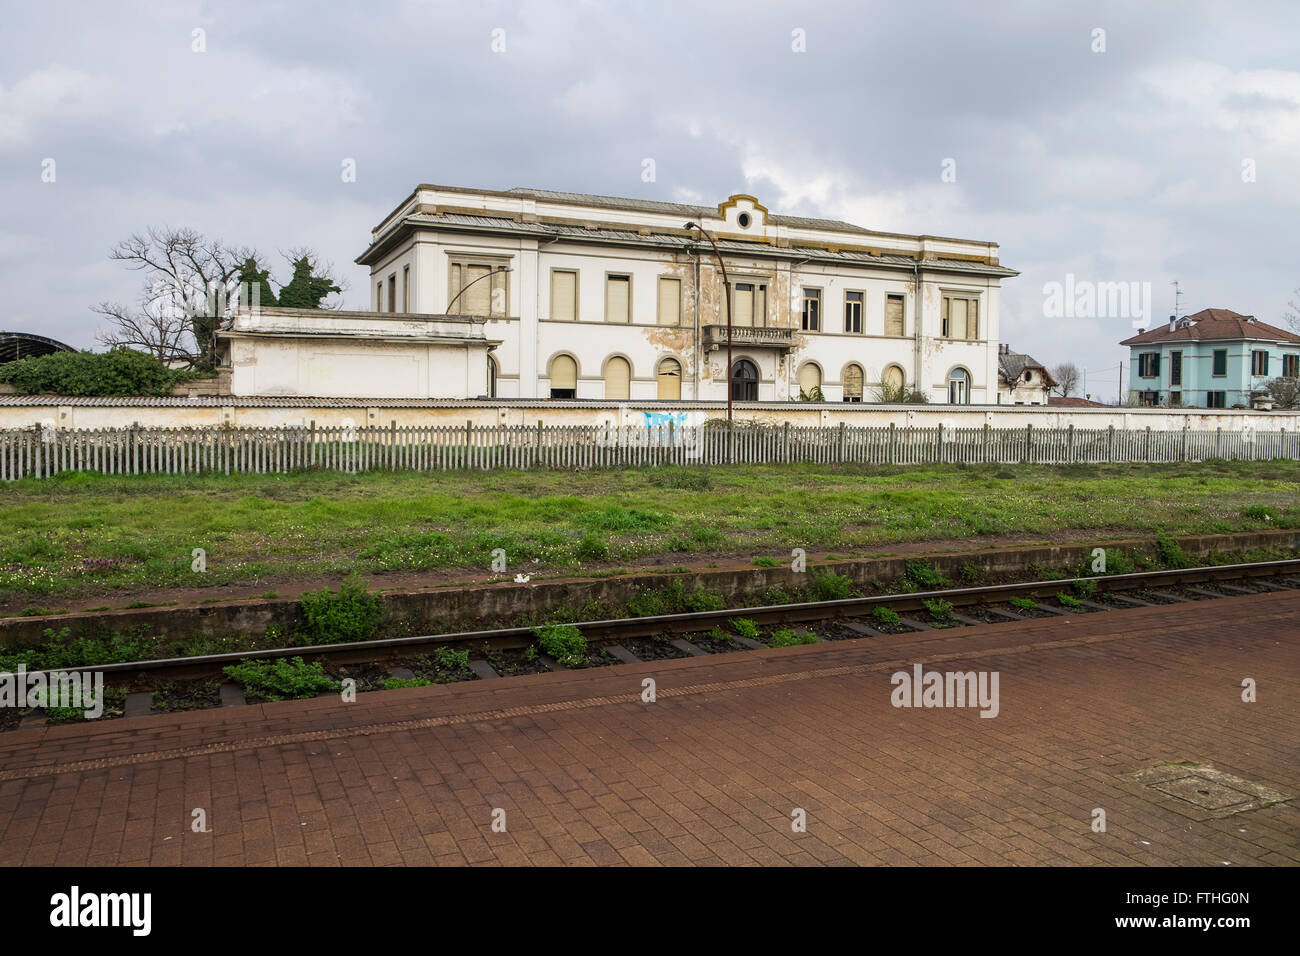 L'Italia, Via Palestro, stazione ferroviaria Foto Stock